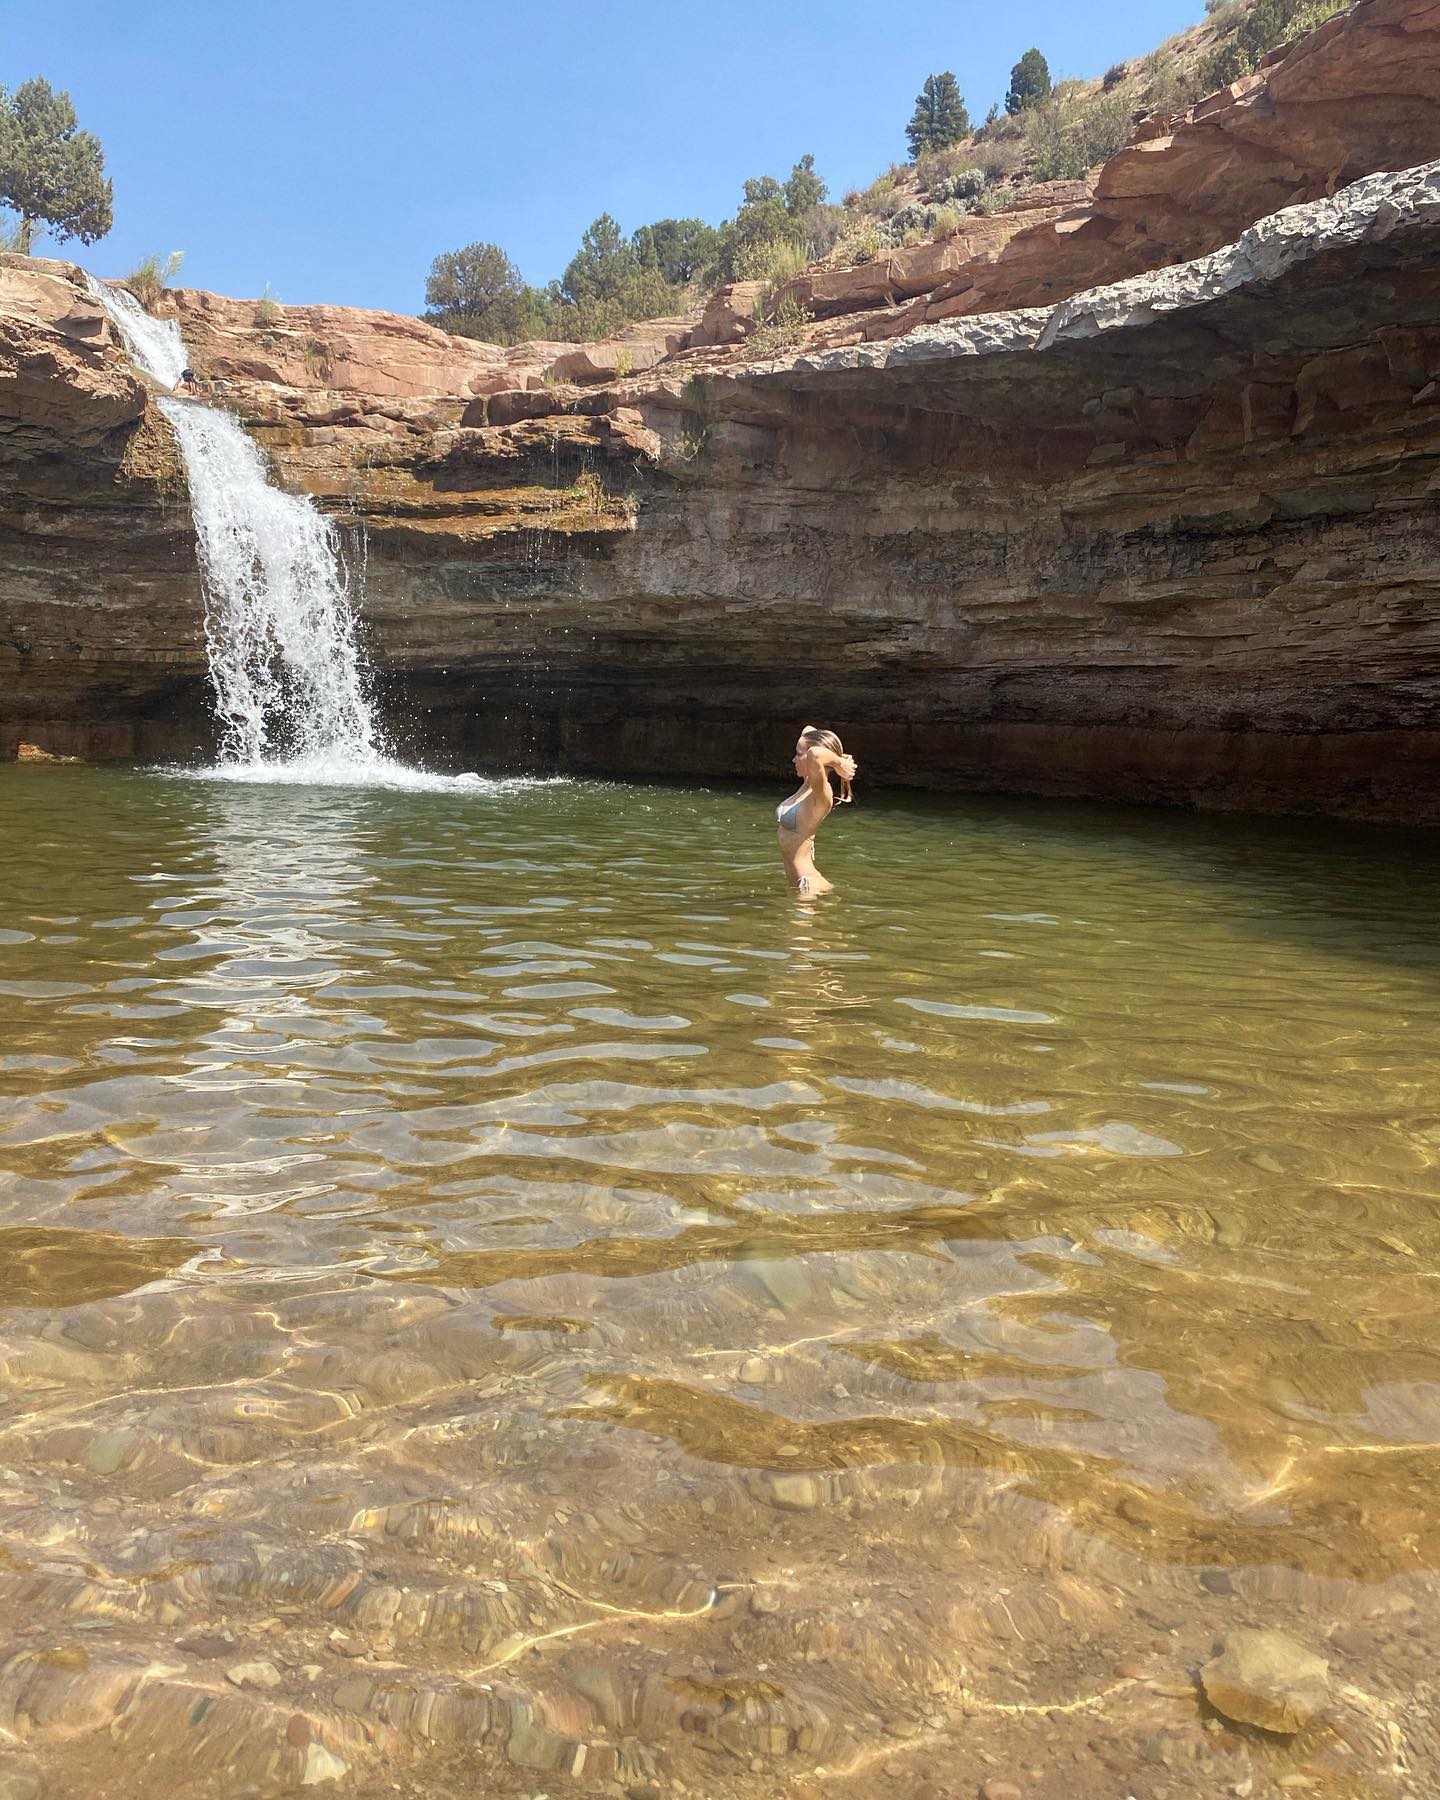 Photos n°3 : Dove Cameron Takes a Dip!